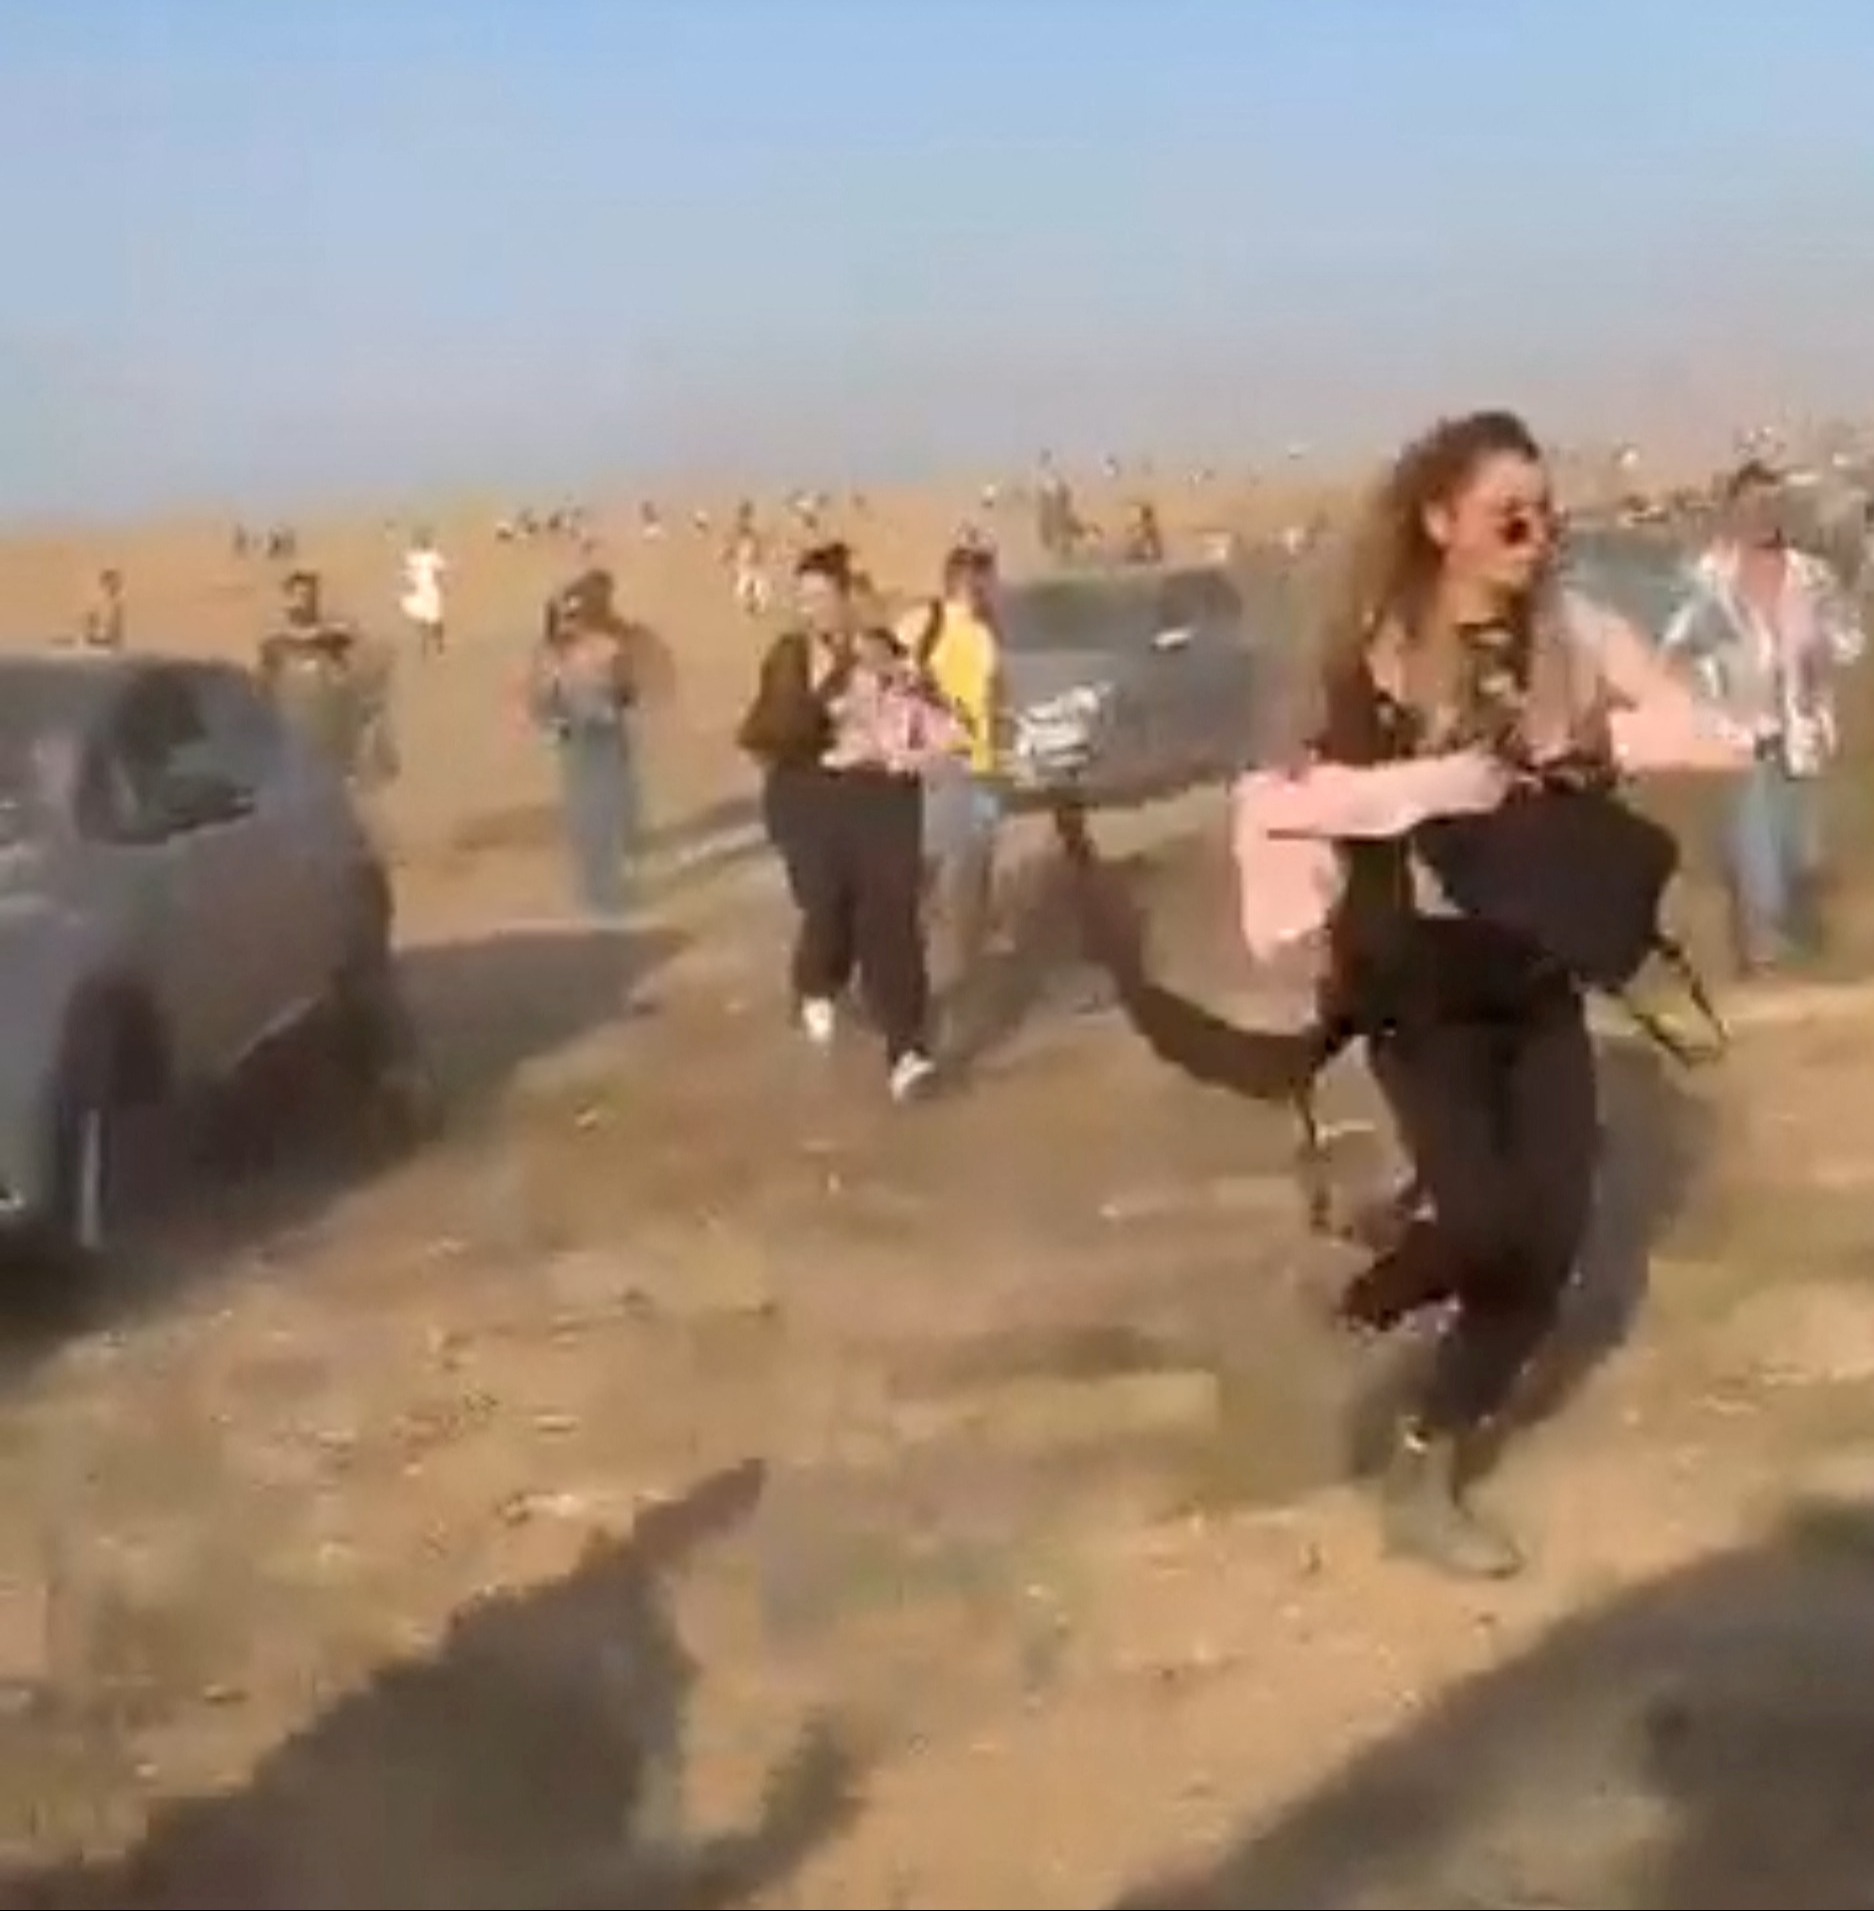 Festivalbesucher fliehen vor den schwer bewaffneten mörderischen Hamas-Terroristen